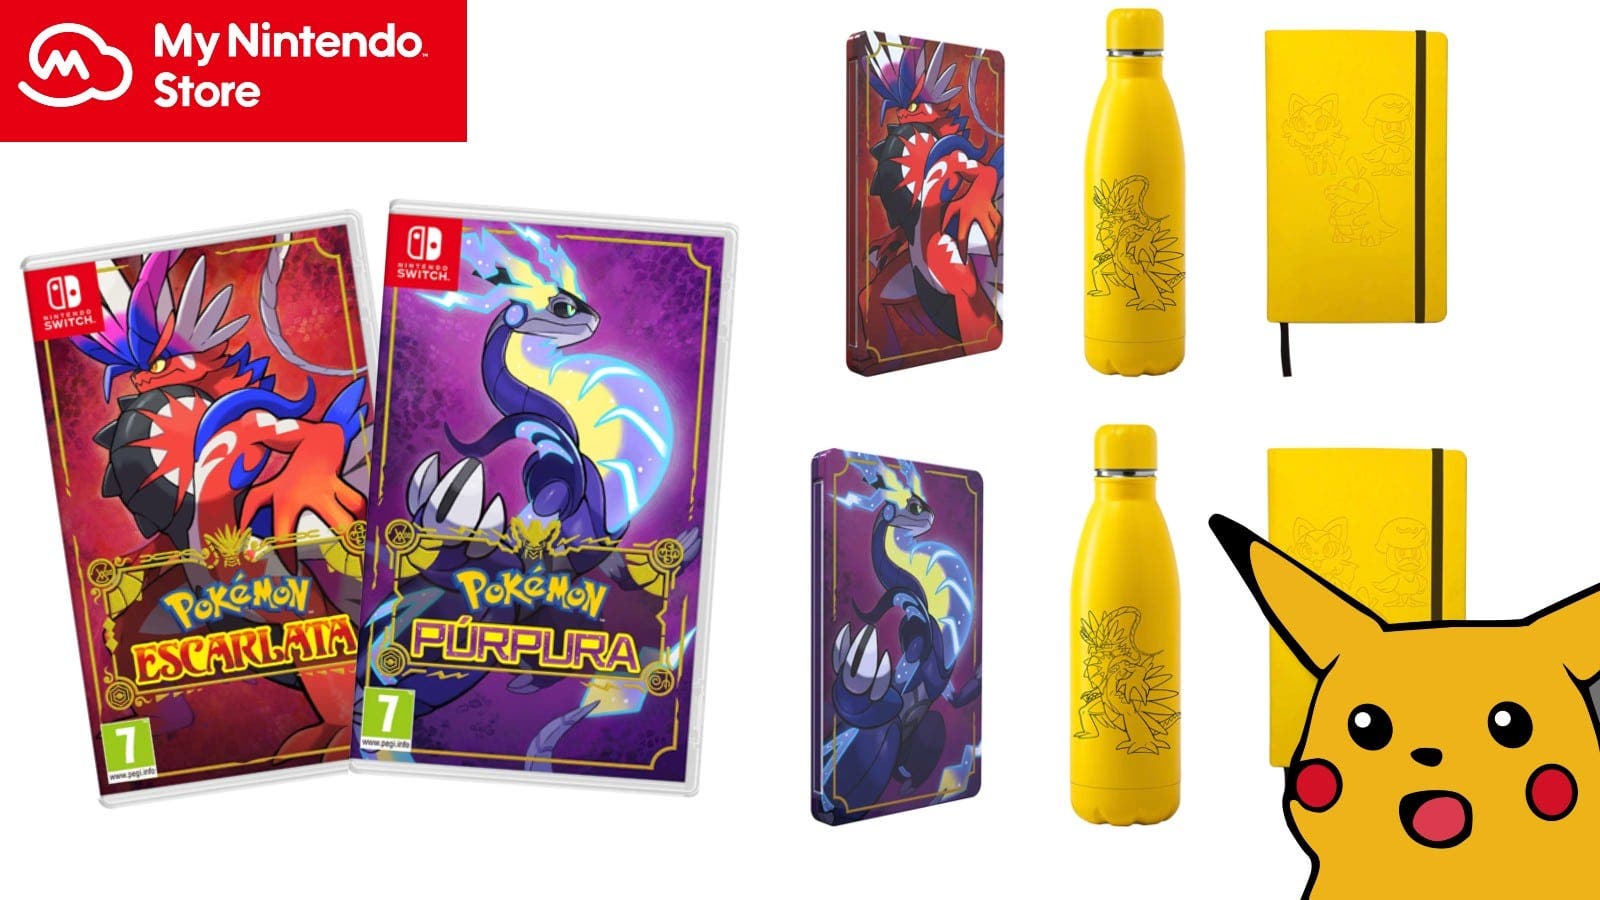 Pokémon Escarlata y Púrpura revelan jugosos packs y regalos en My Nintendo Store